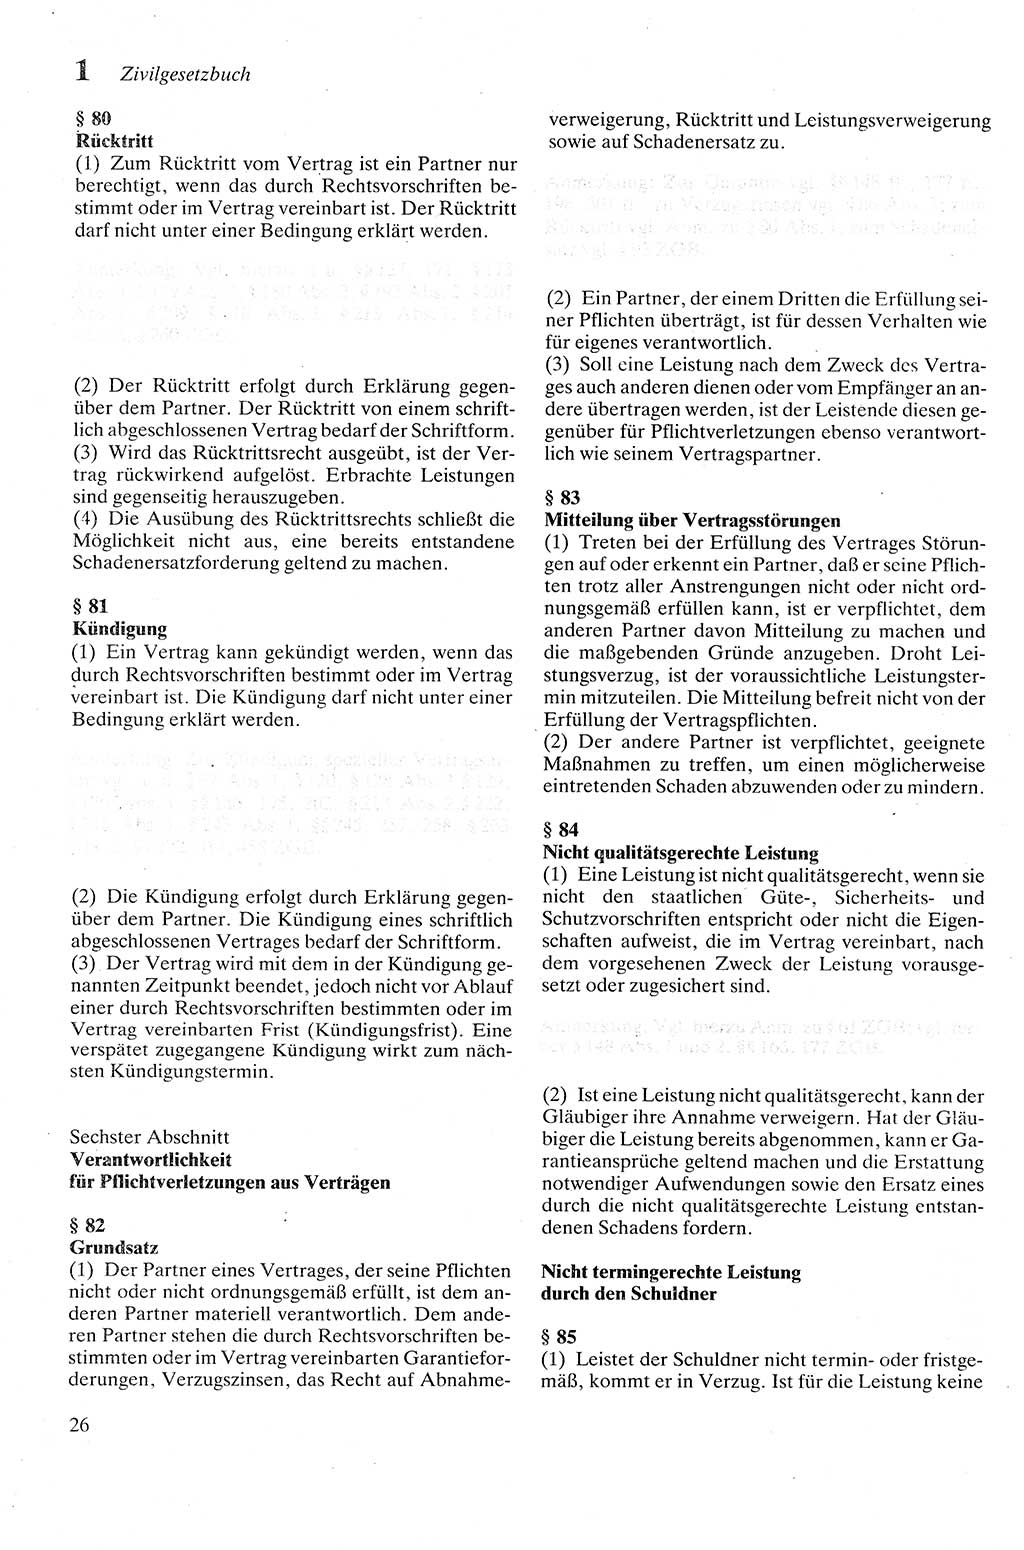 Zivilgesetzbuch (ZVG) sowie angrenzende Gesetze und Bestimmungen [Deutsche Demokratische Republik (DDR)] 1975, Seite 26 (ZGB Ges. Best. DDR 1975, S. 26)